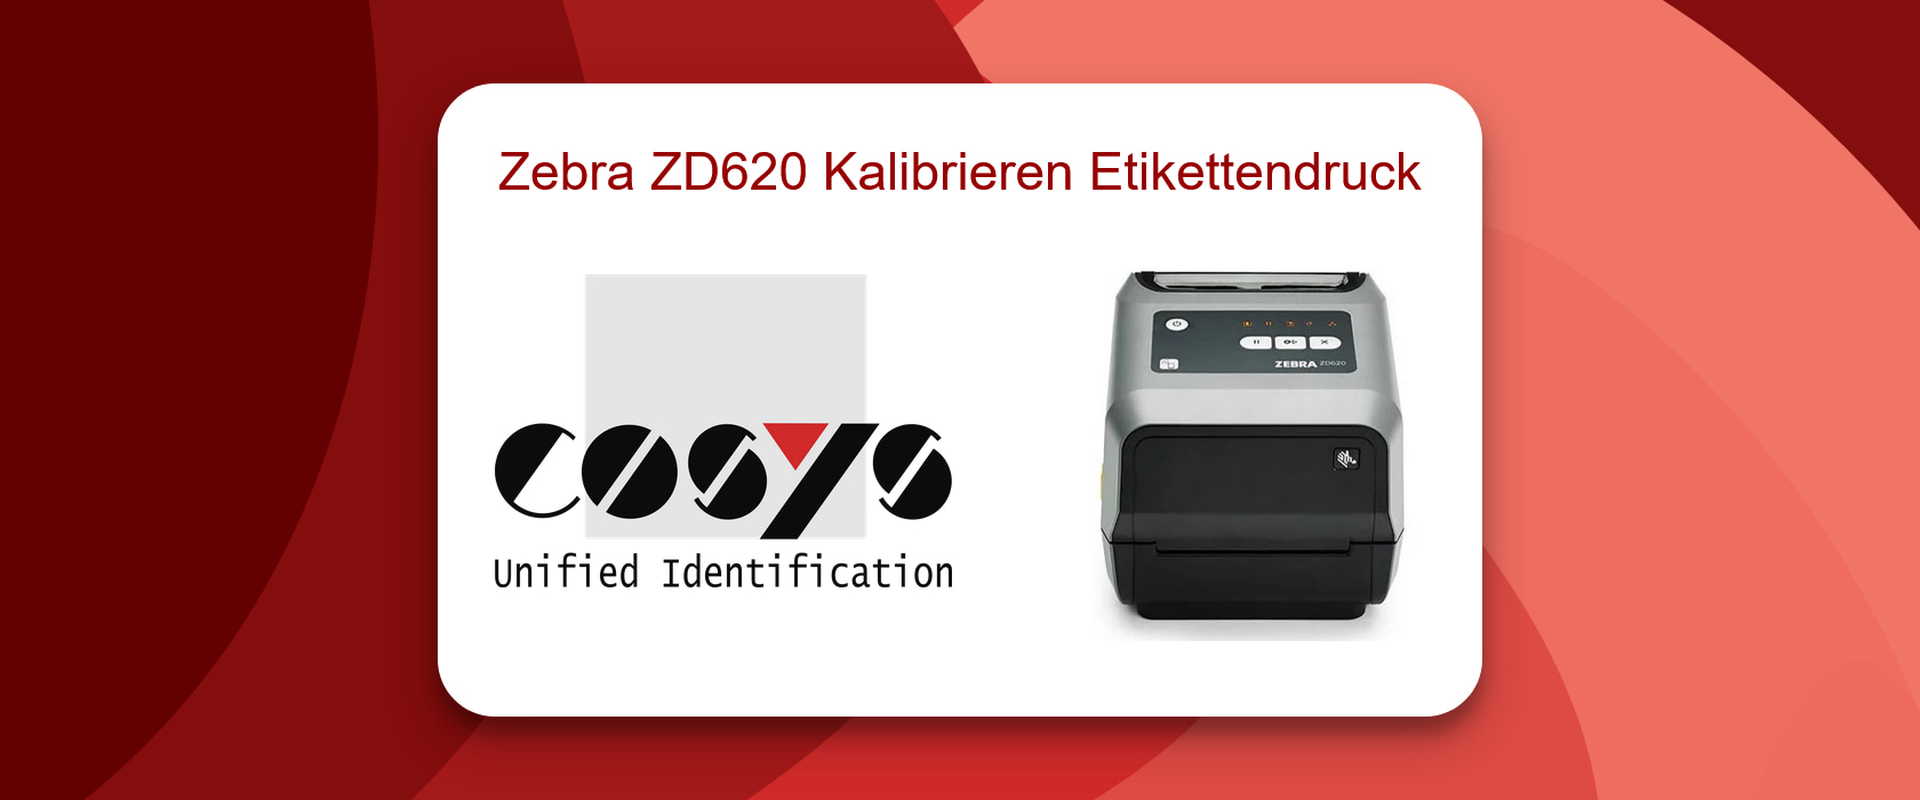 Kalibrierung des Zebra ZD620